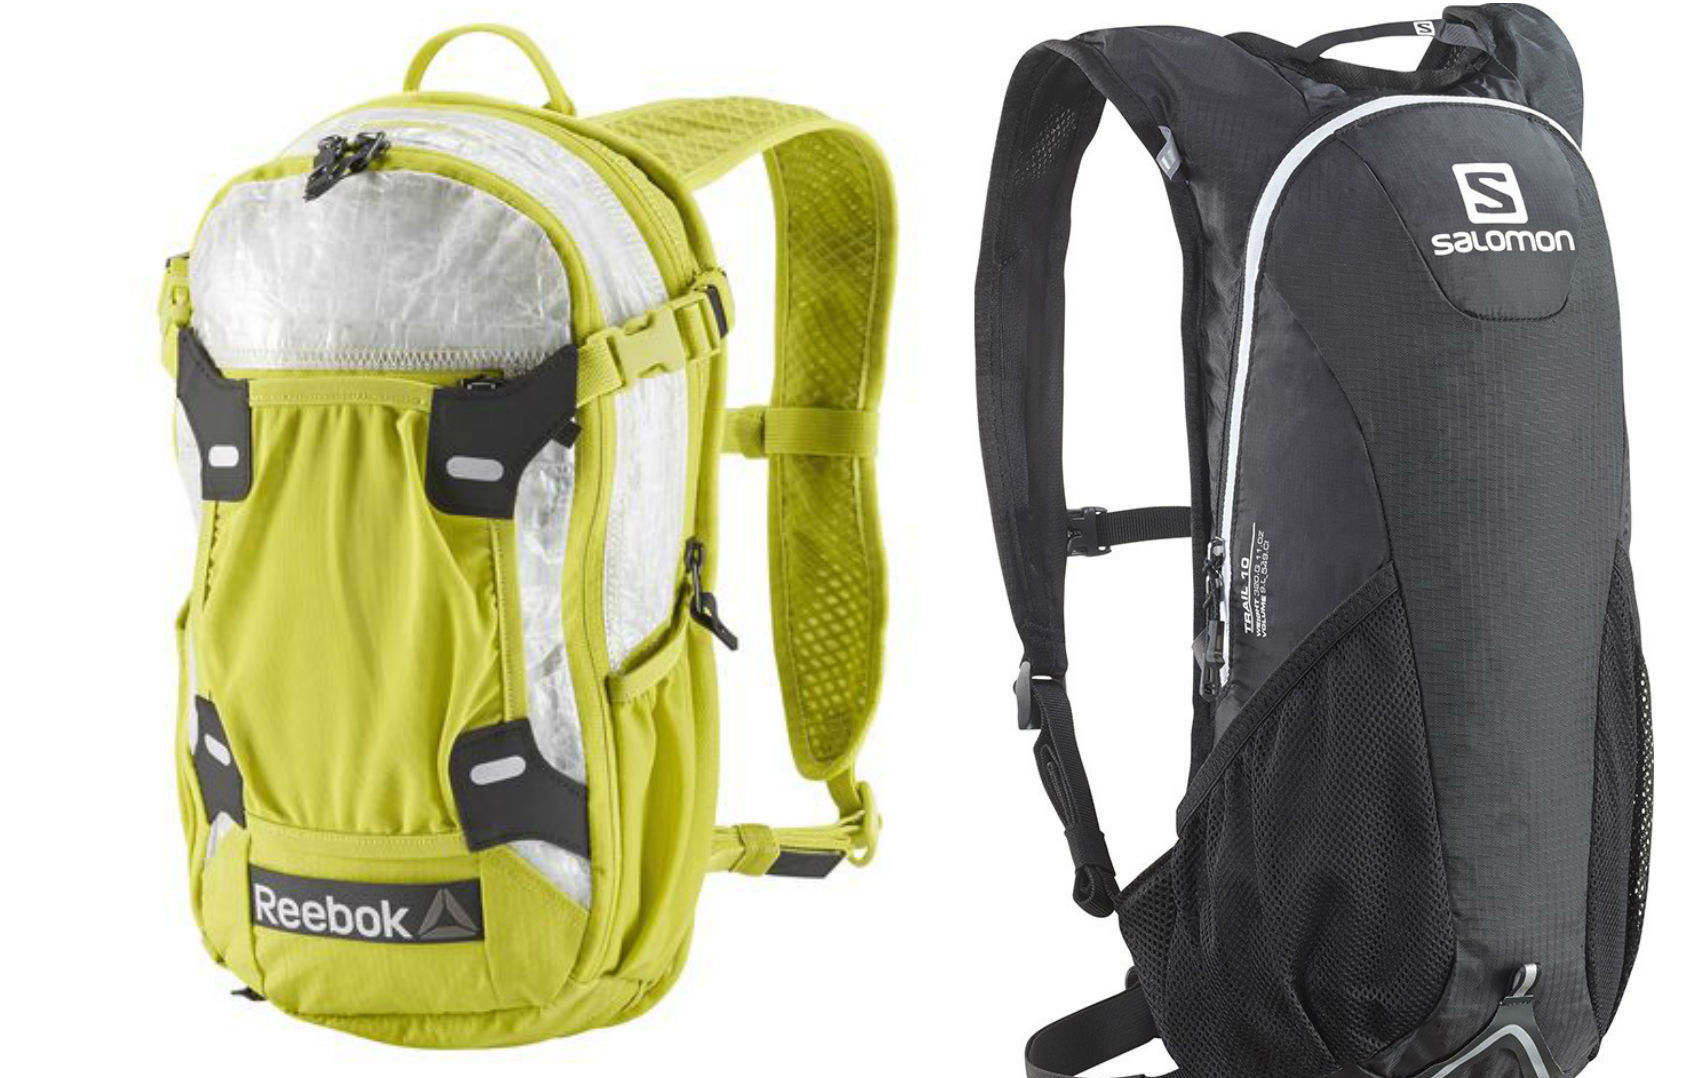 Обзор не гаджета. Выбираем лучший чехол для тренировок и другие аксессуары для смартфонов: повязки, сумки и силиконовый карман Adidas - 11